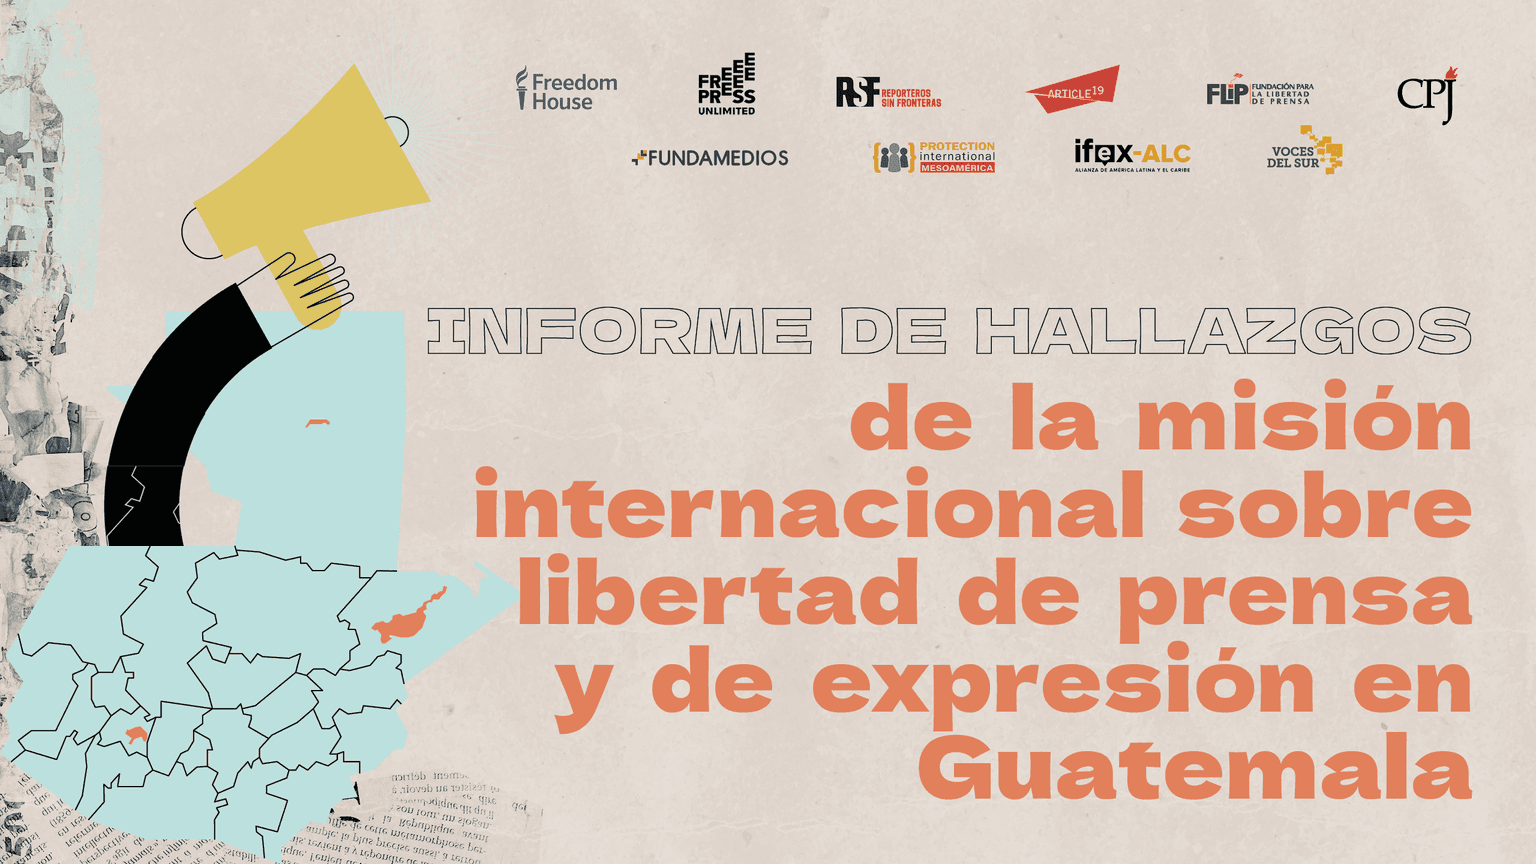 Informe de hallazgos de la misión internacional sobre libertad de expresión y de prensa en Guatemala